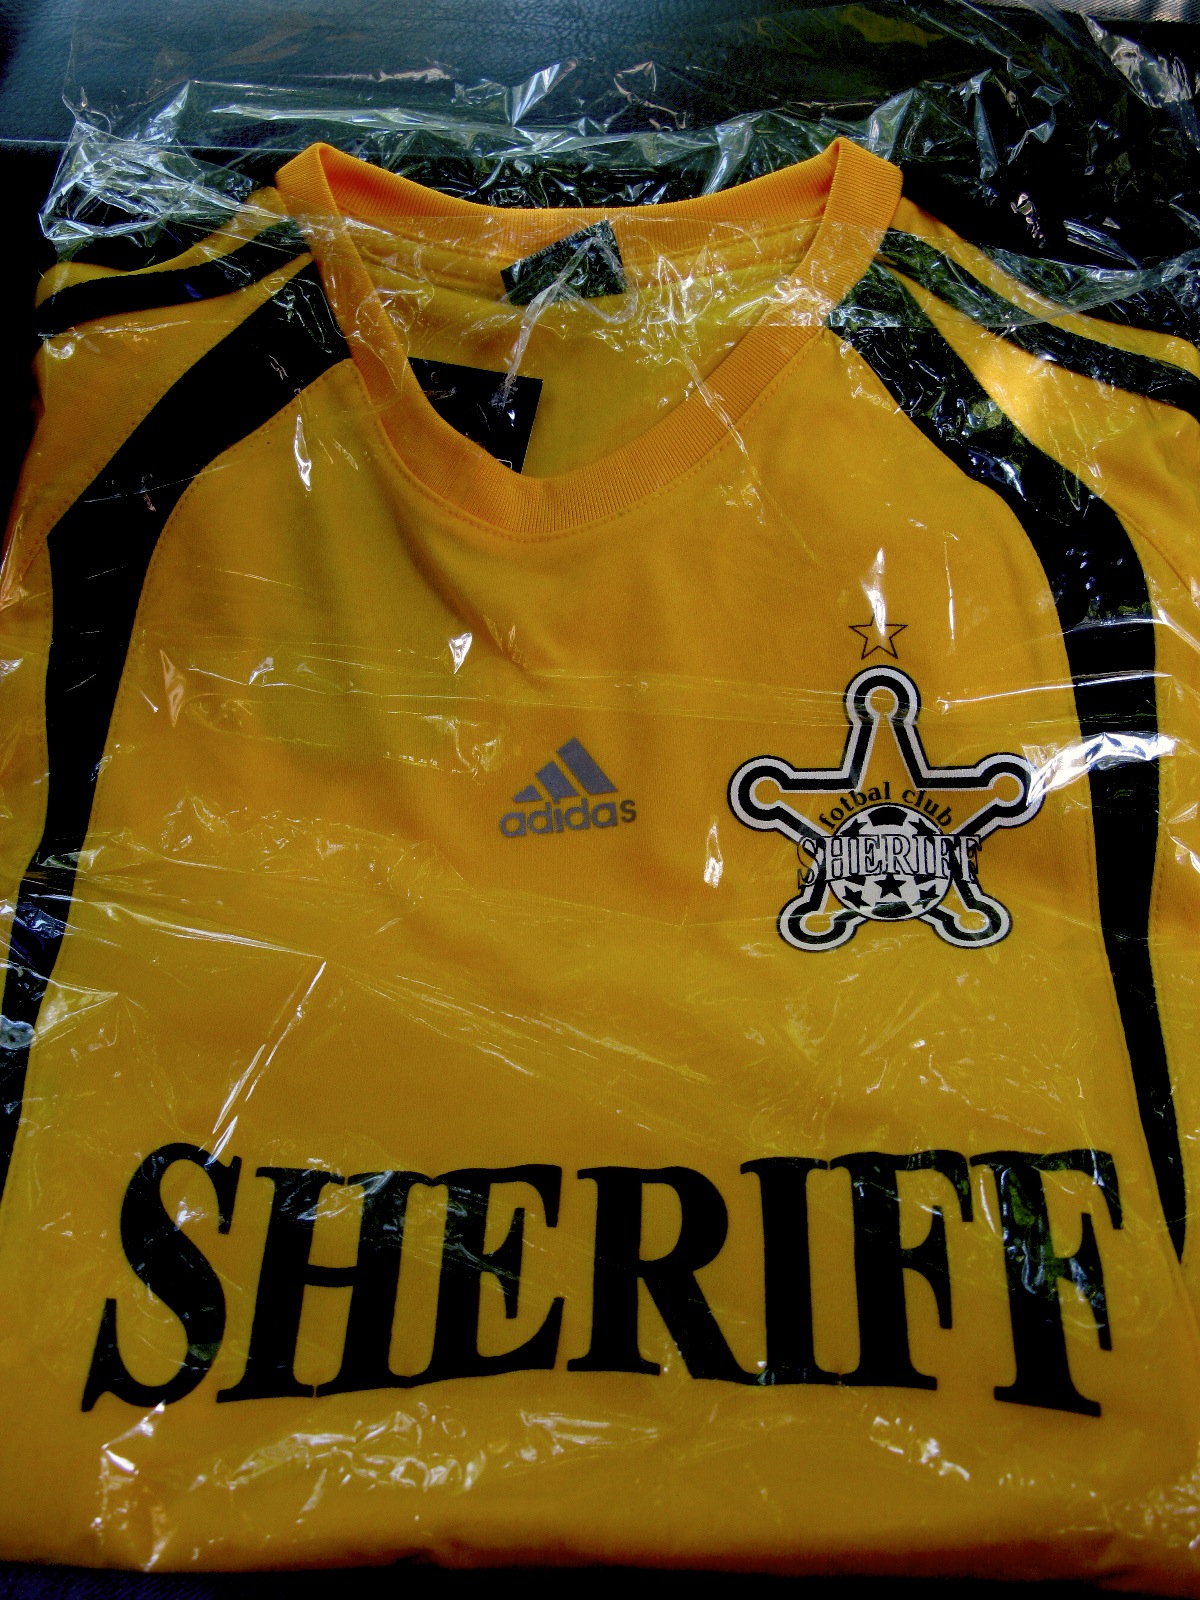 La camiseta del Sheriff de Tiraspol que compré, ahora puedo ir intimidando a la gente cuando juegue con ellos.